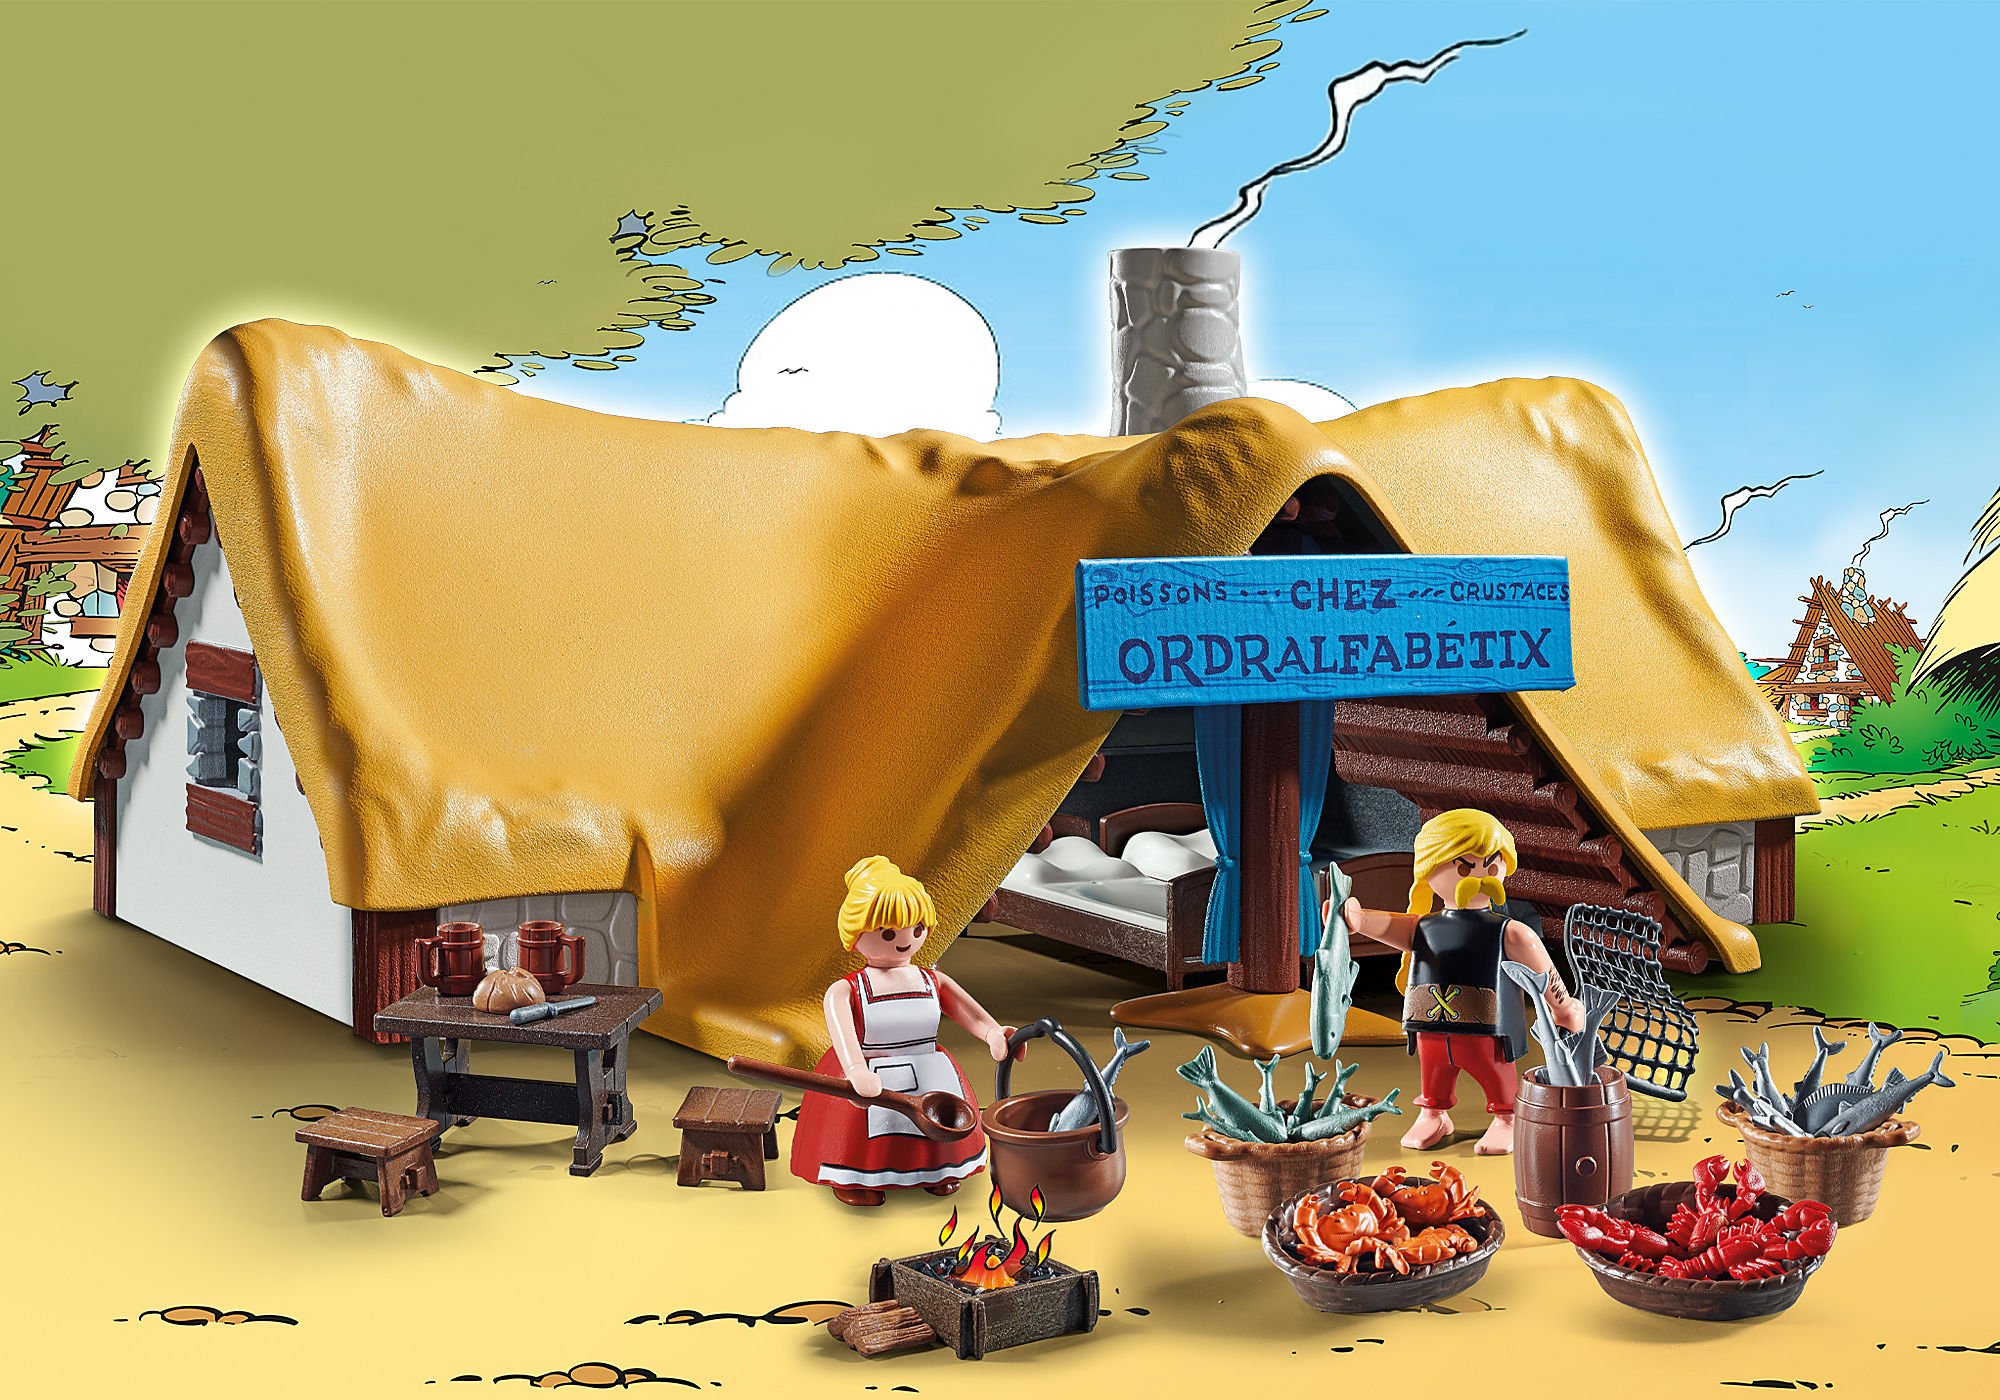 En lançant des figurines Astérix, Playmobil joue la France